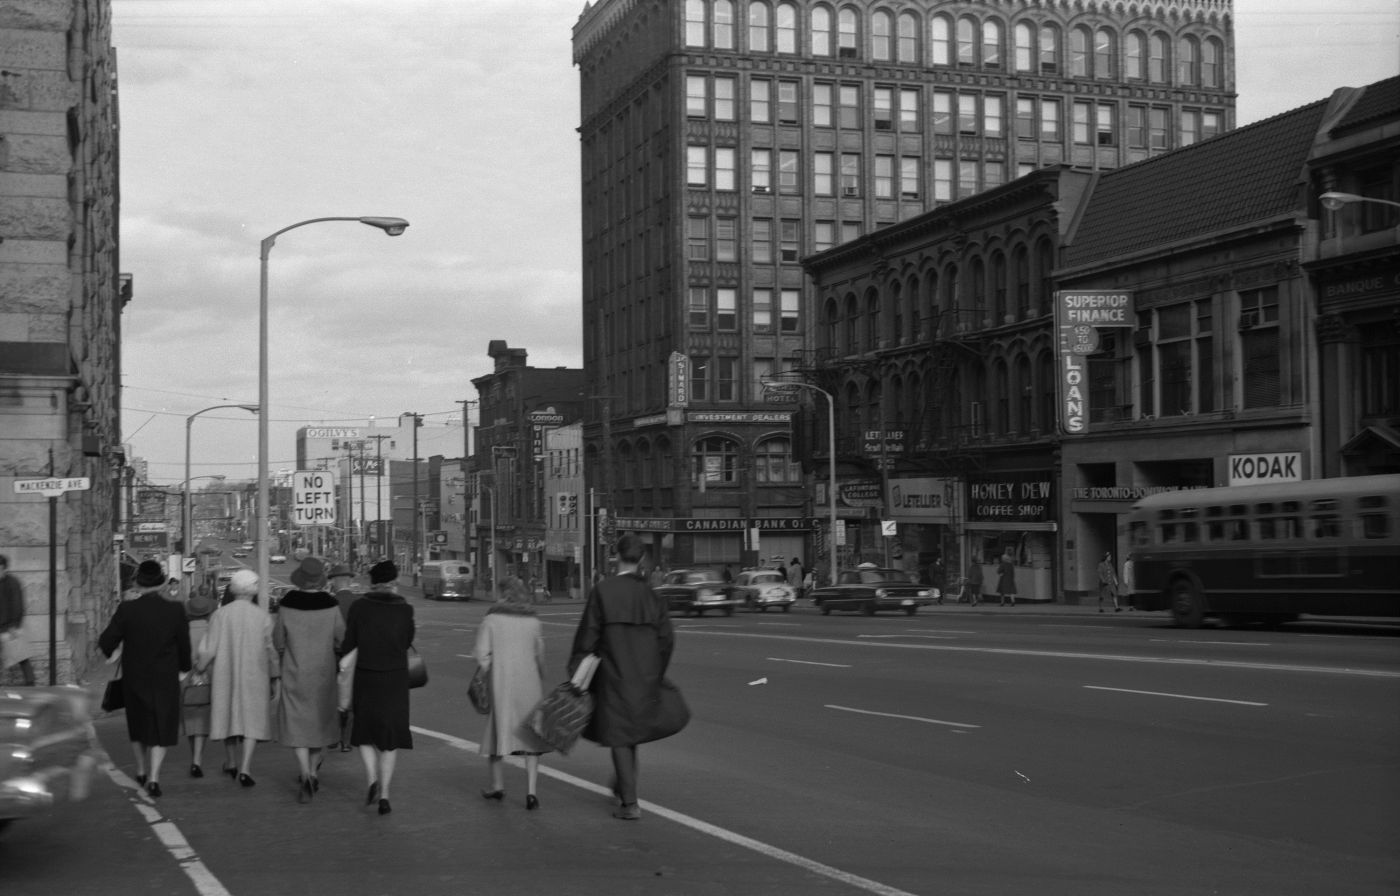 Photographie en noir et blanc d’une rue passante avec édifices de plusieurs étages et panneaux publicitaires. À l’avant-plan, un groupe de piétons bien mis traverse une rue transversale.